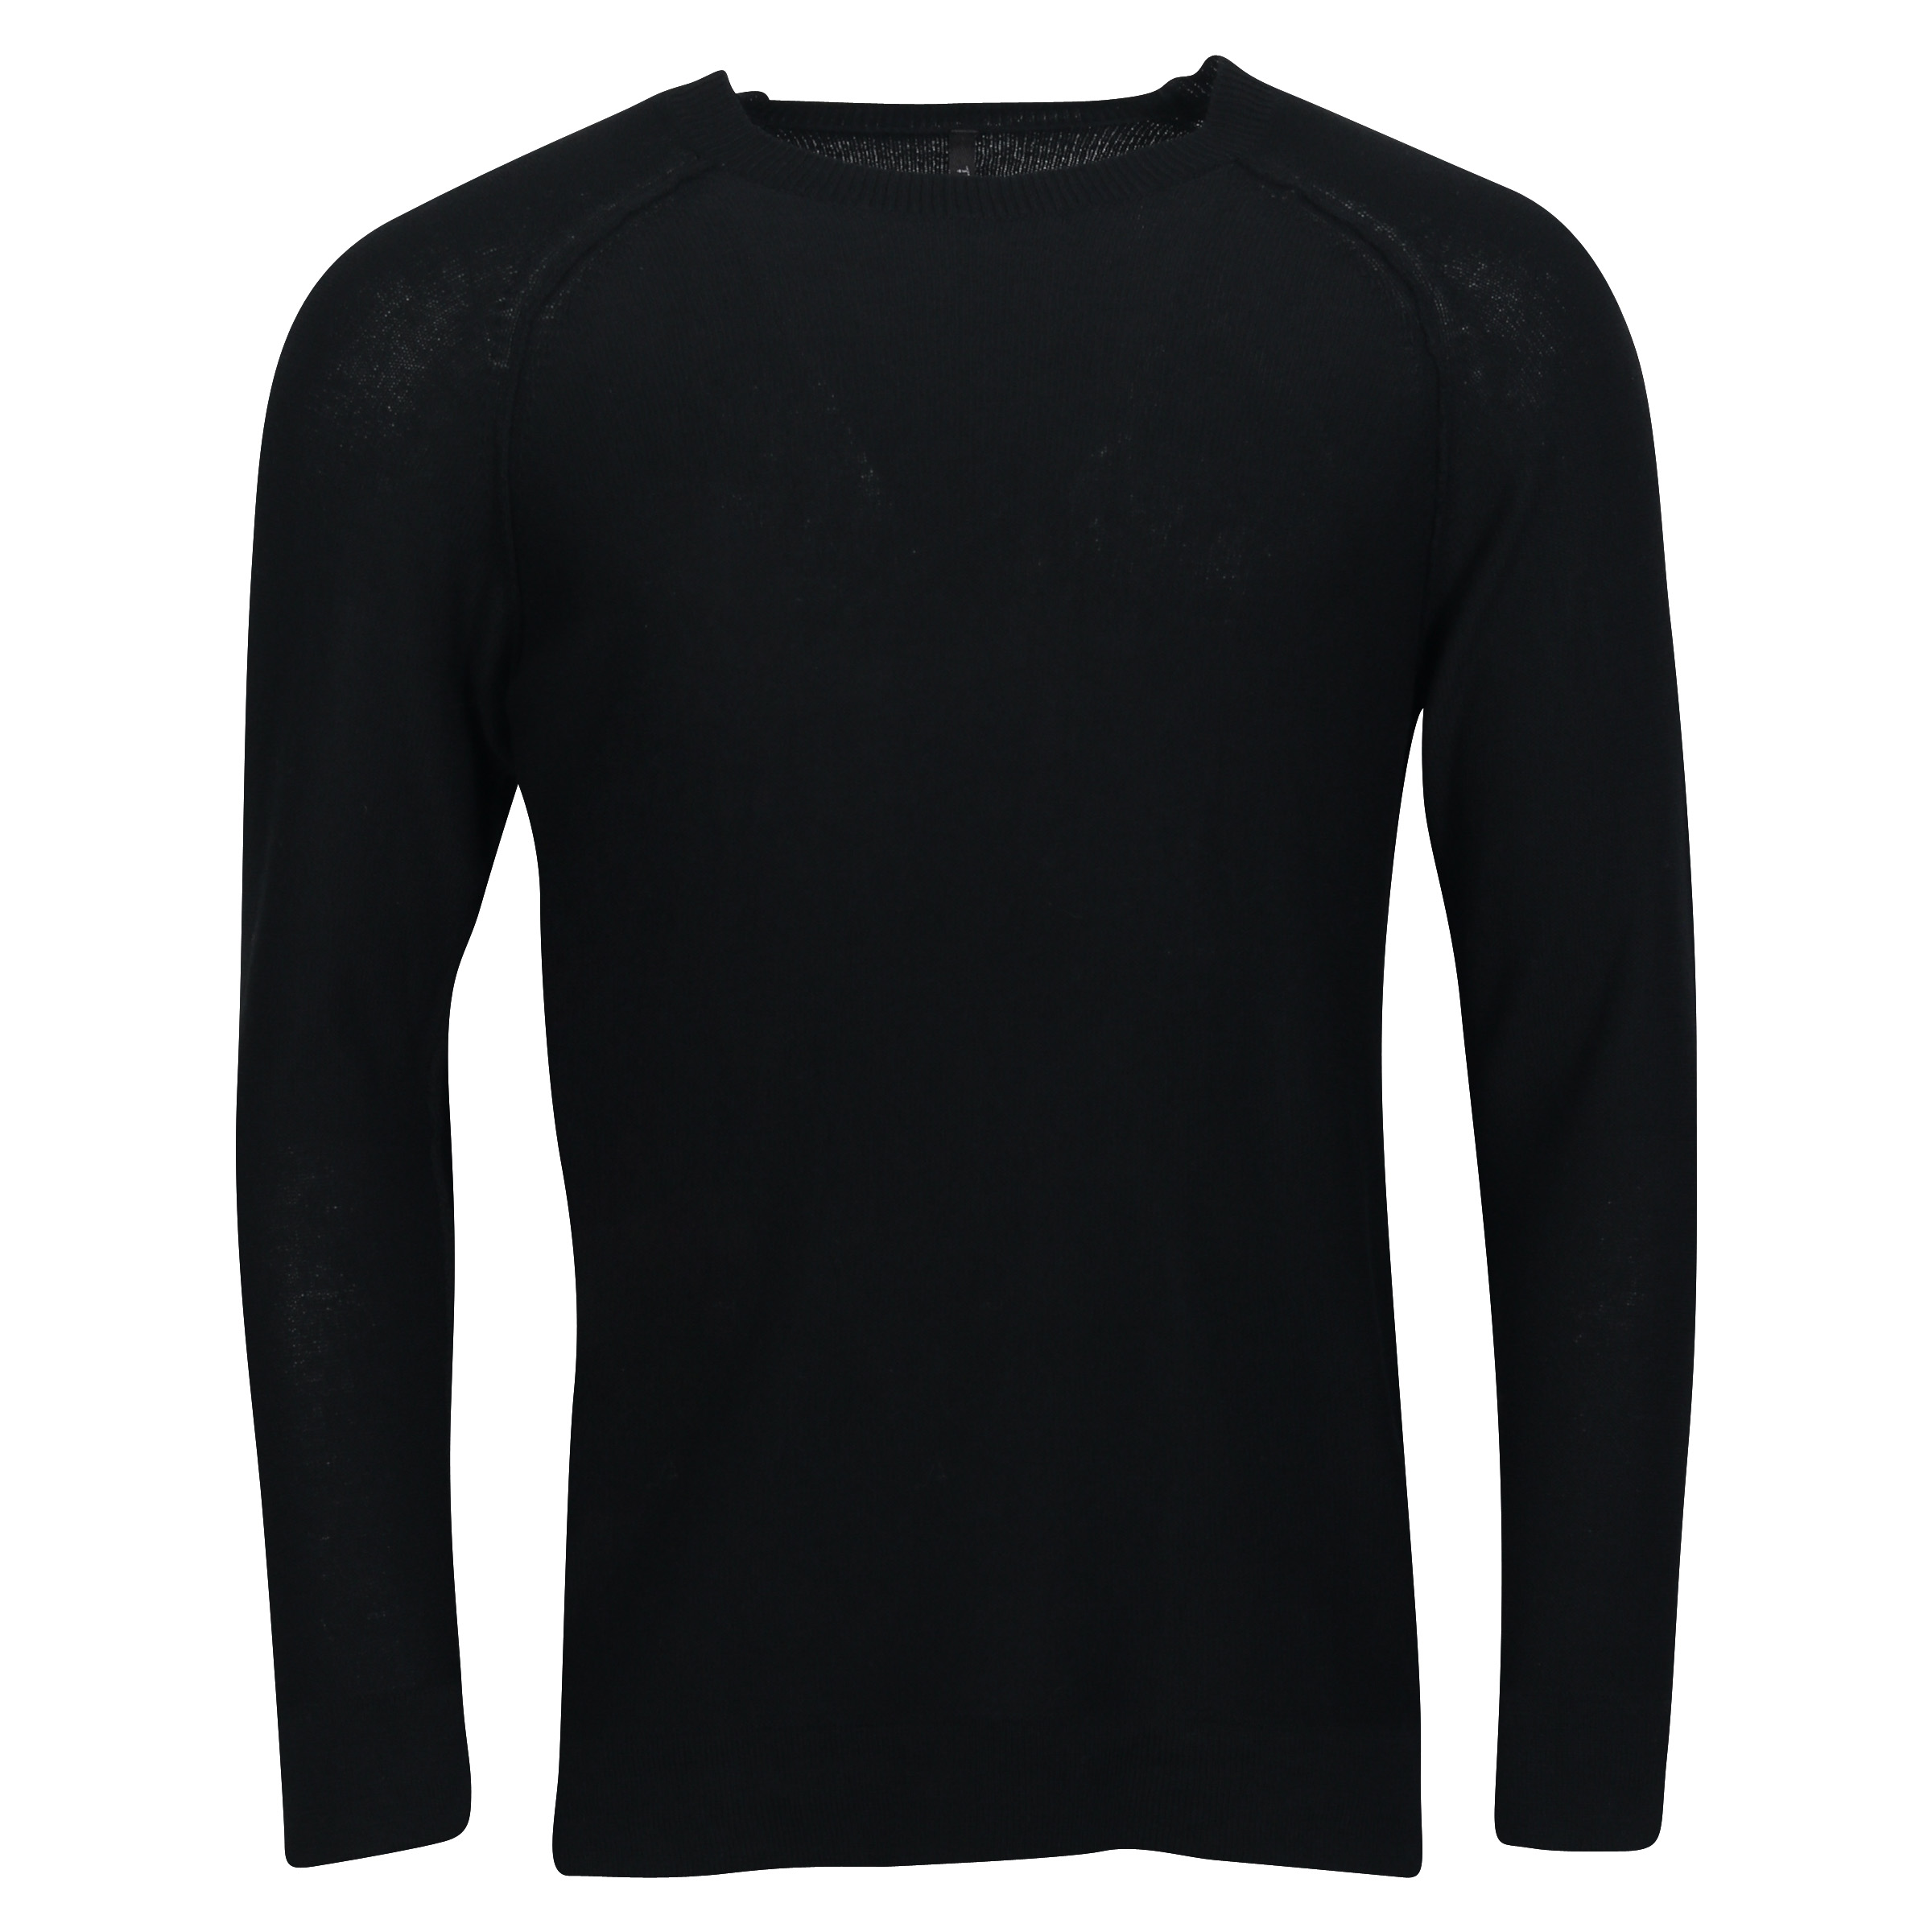 Transit Uomo Light Wool Sweater in Black